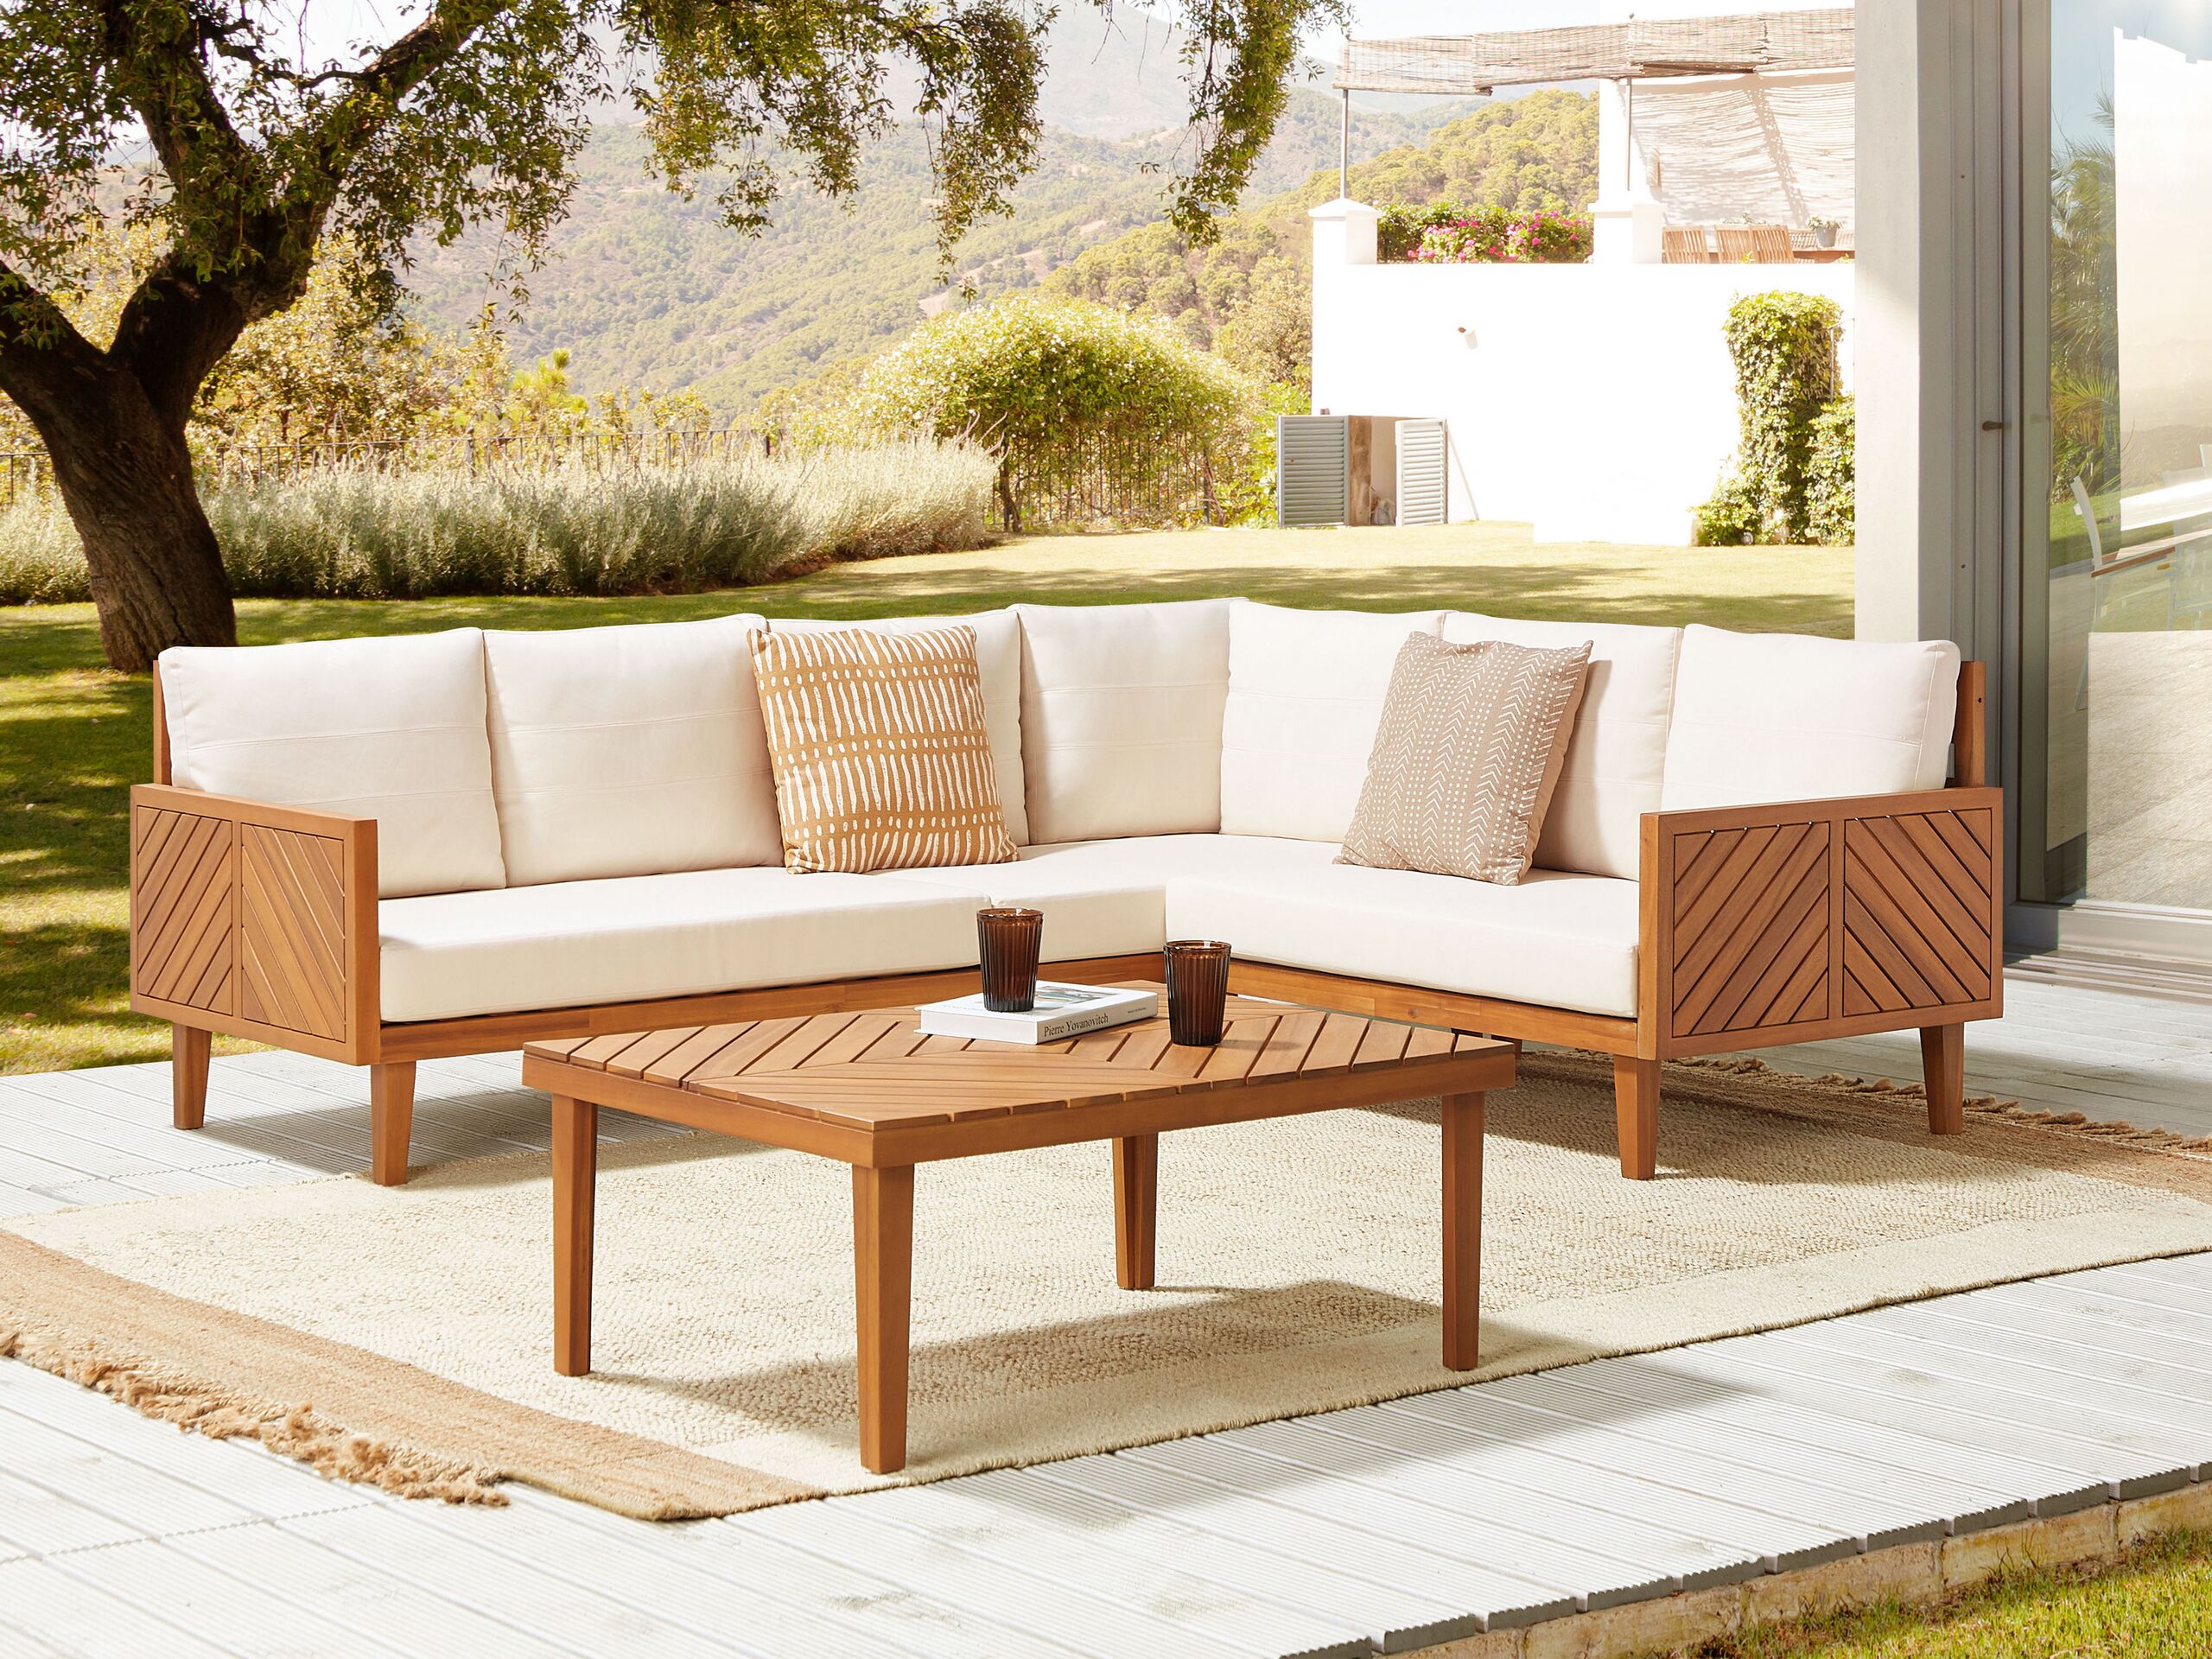 Conjunto de sofás de jardim madeira de acácia almofadas brancas 4 lugares design moderno conjunto de jantar ao ar livre